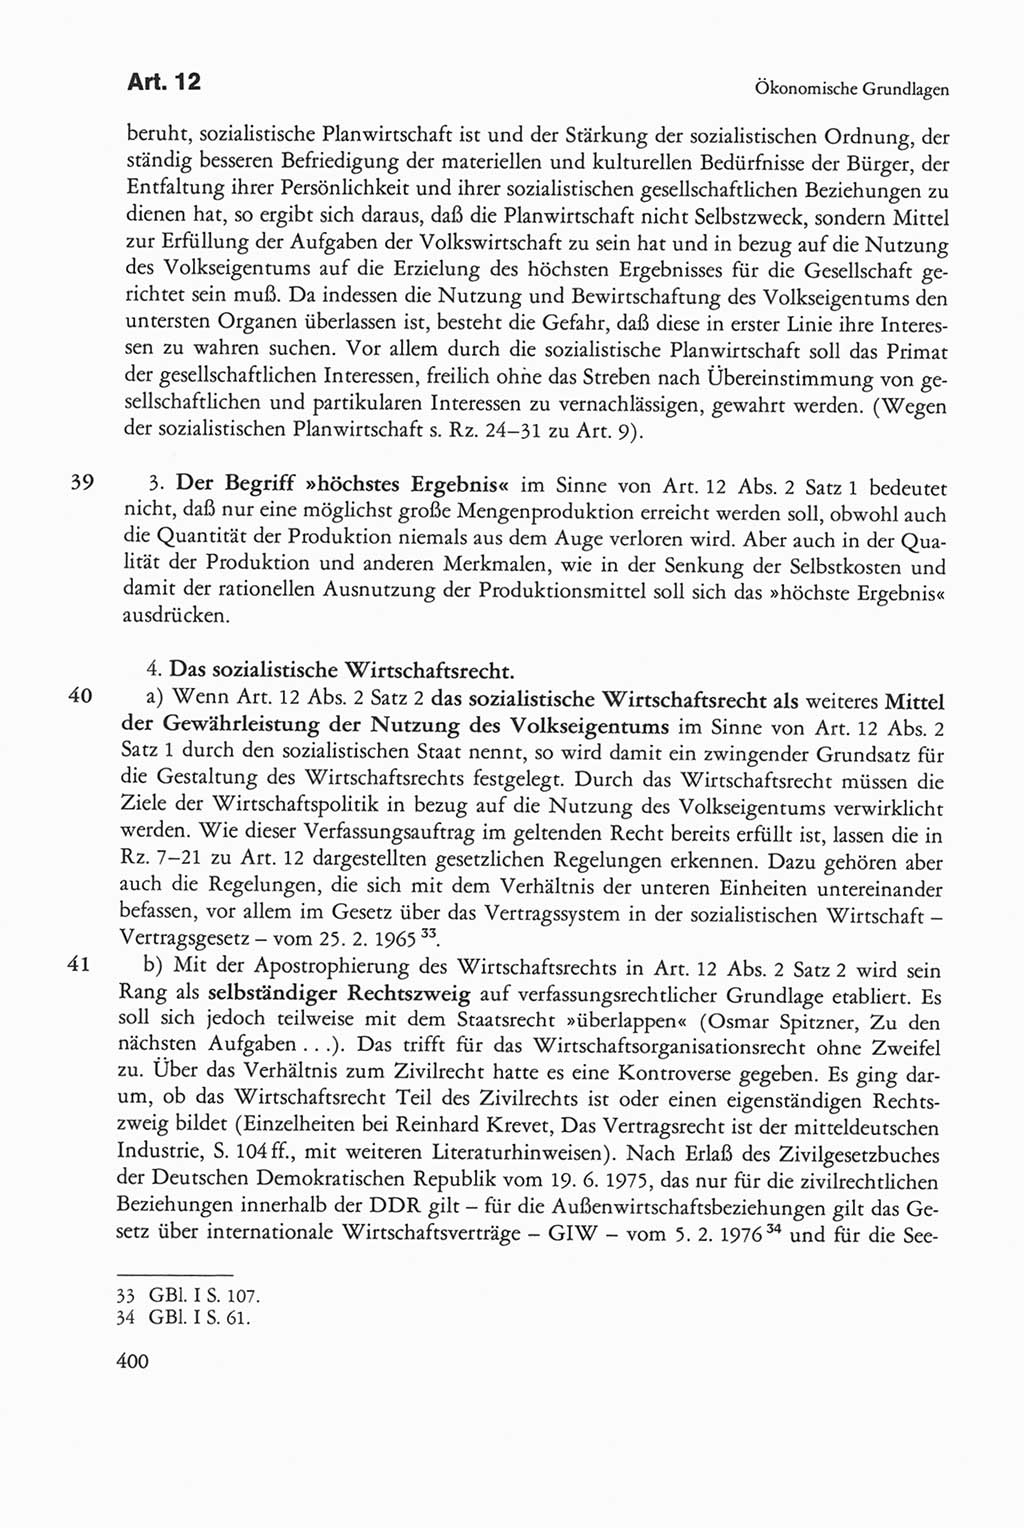 Die sozialistische Verfassung der Deutschen Demokratischen Republik (DDR), Kommentar 1982, Seite 400 (Soz. Verf. DDR Komm. 1982, S. 400)